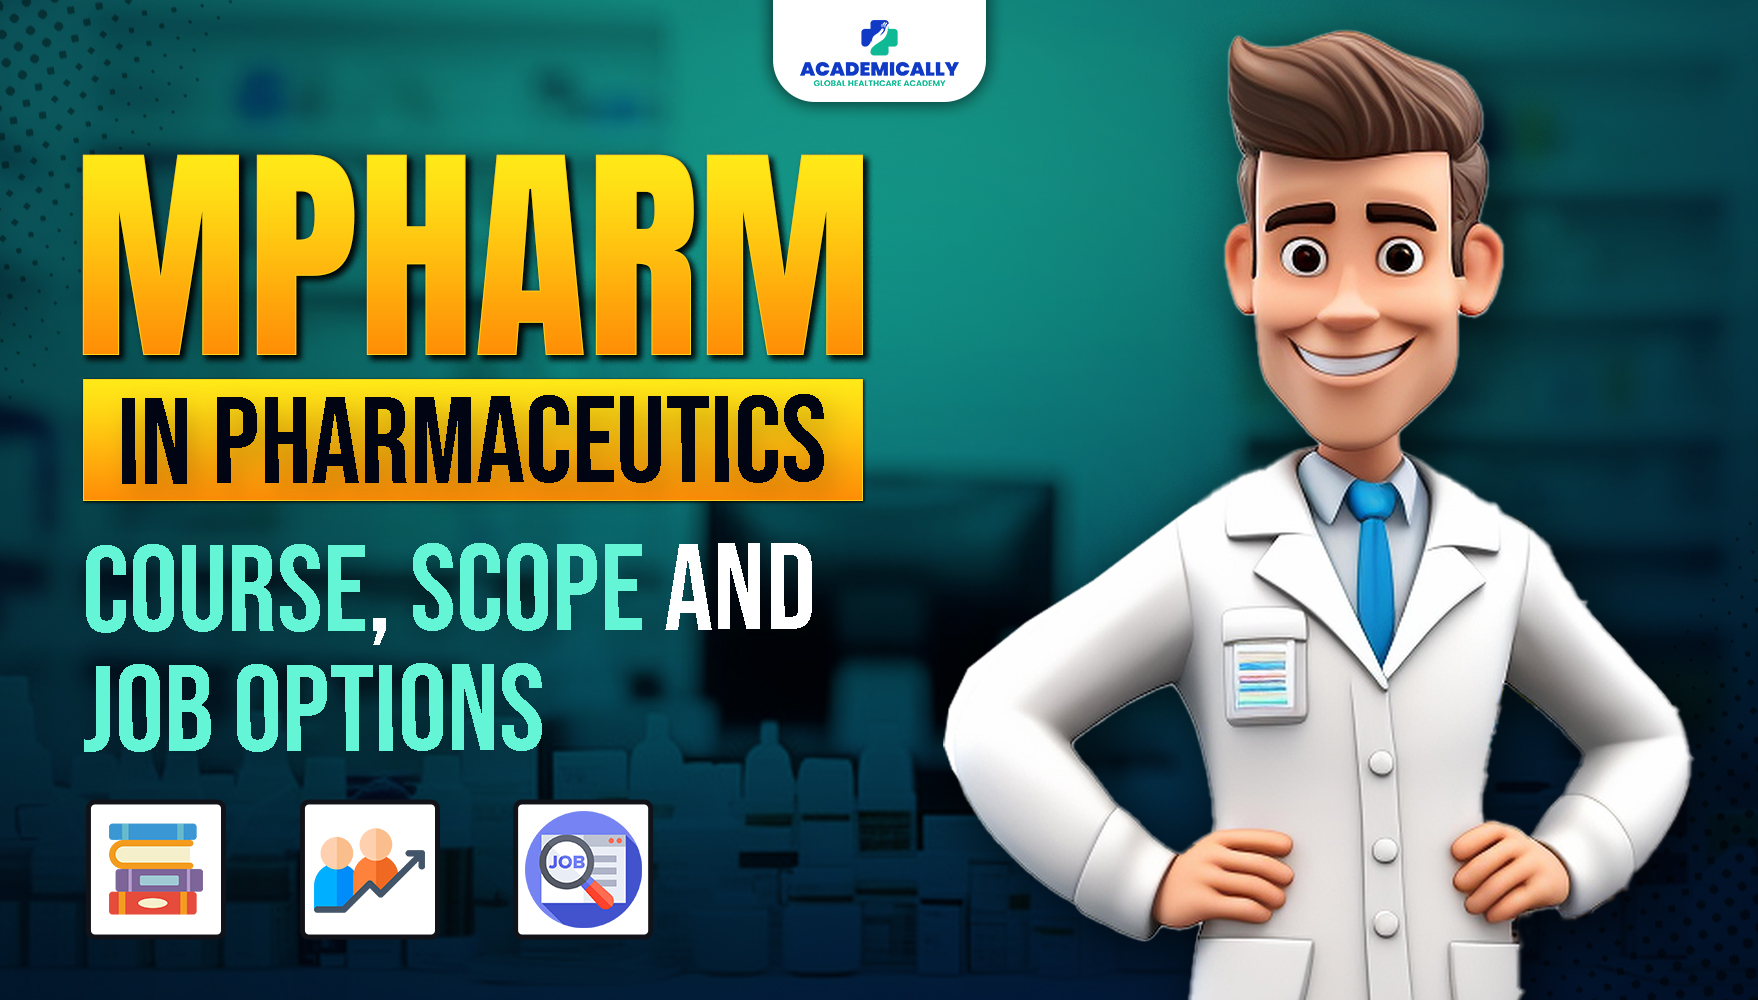 MPharm in Pharmaceutics Job Options